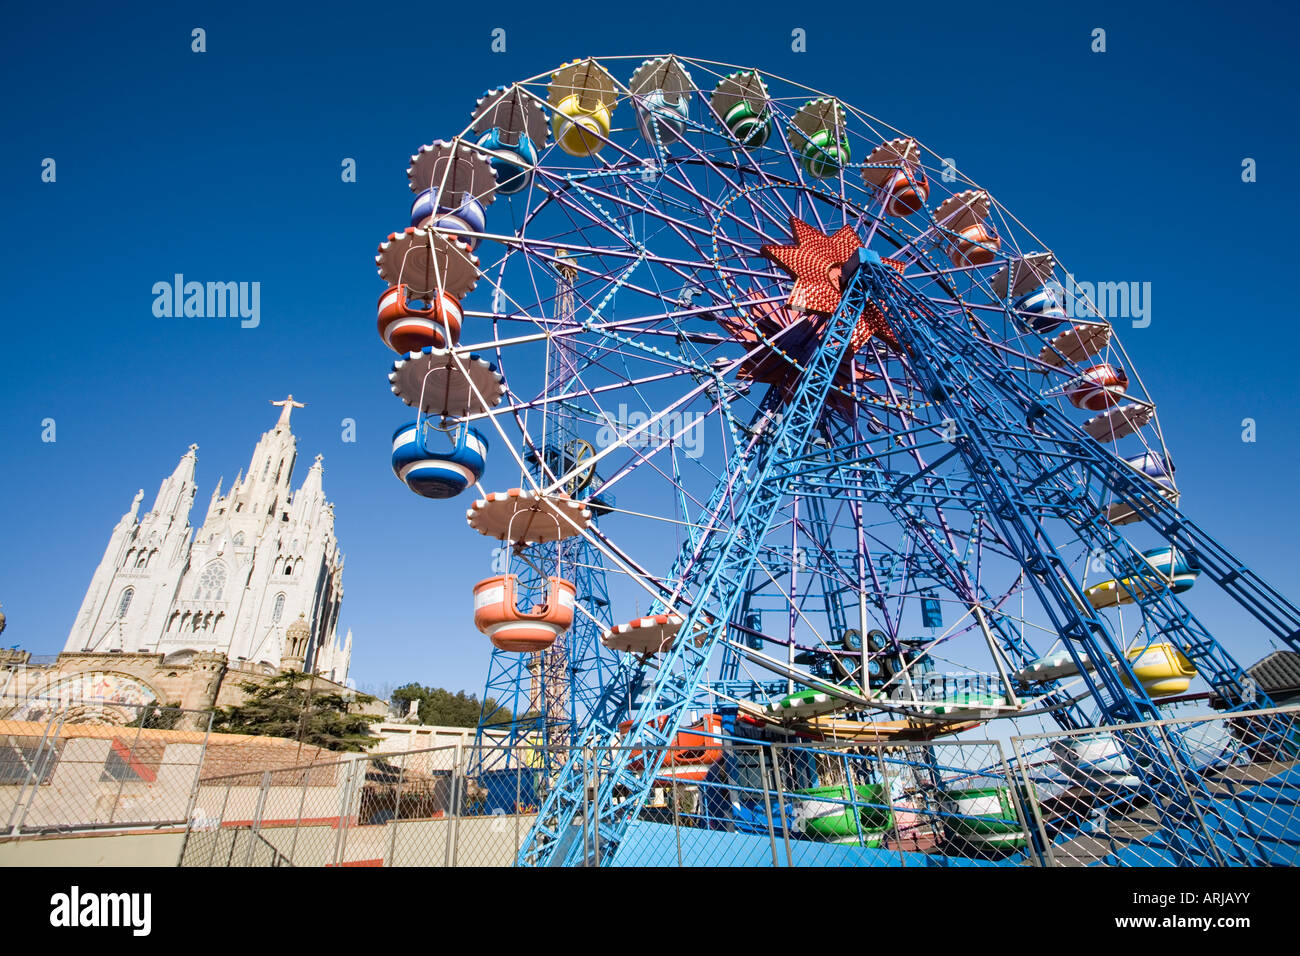 Sacro Cuore e la ruota panoramica nel parco di divertimenti di Tibidabo Foto Stock